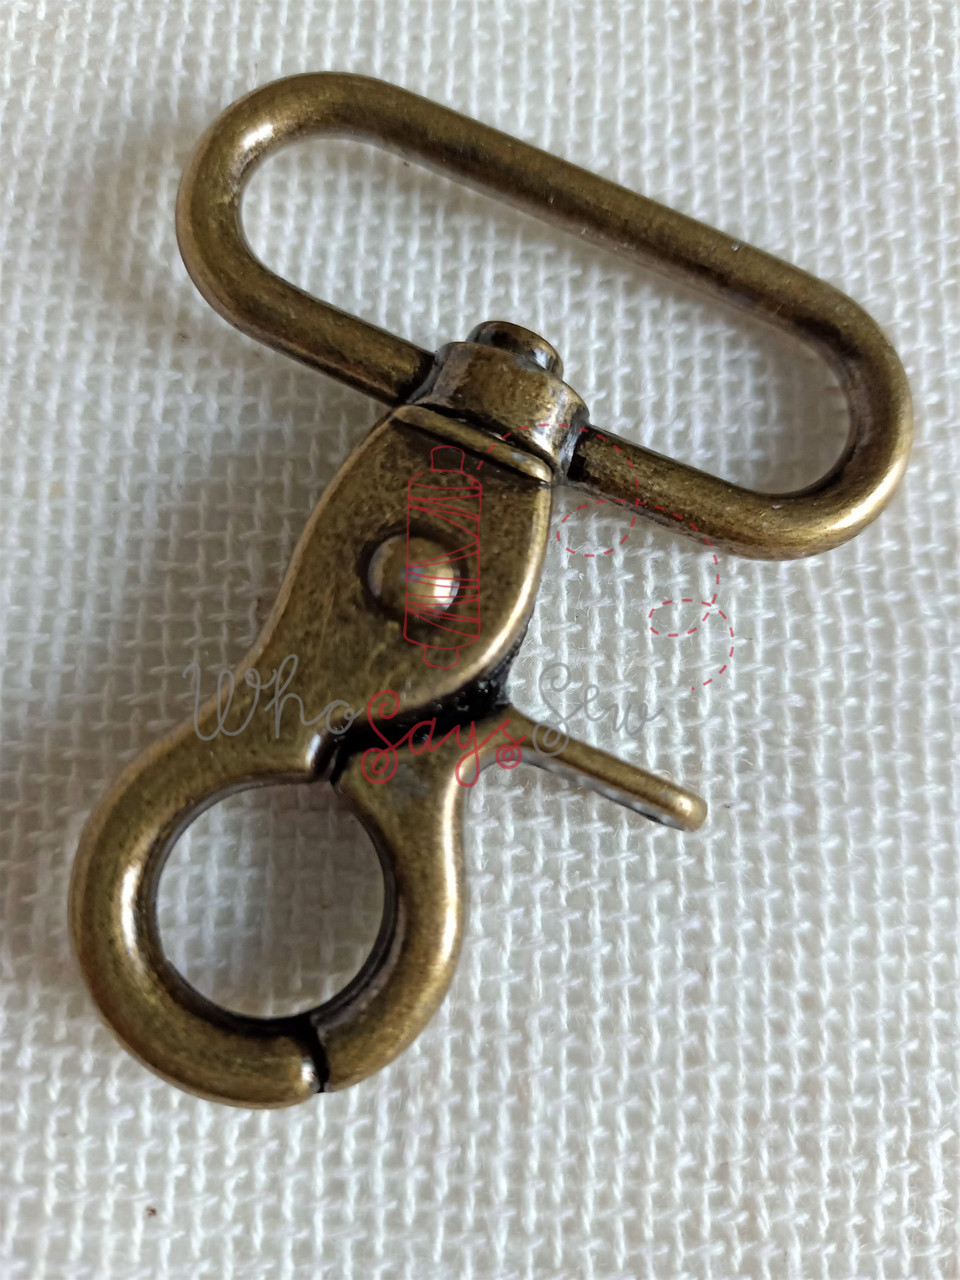 2x Wide Open 3.8cm (1.5) Swivel Snap Hooks in Antique Brass